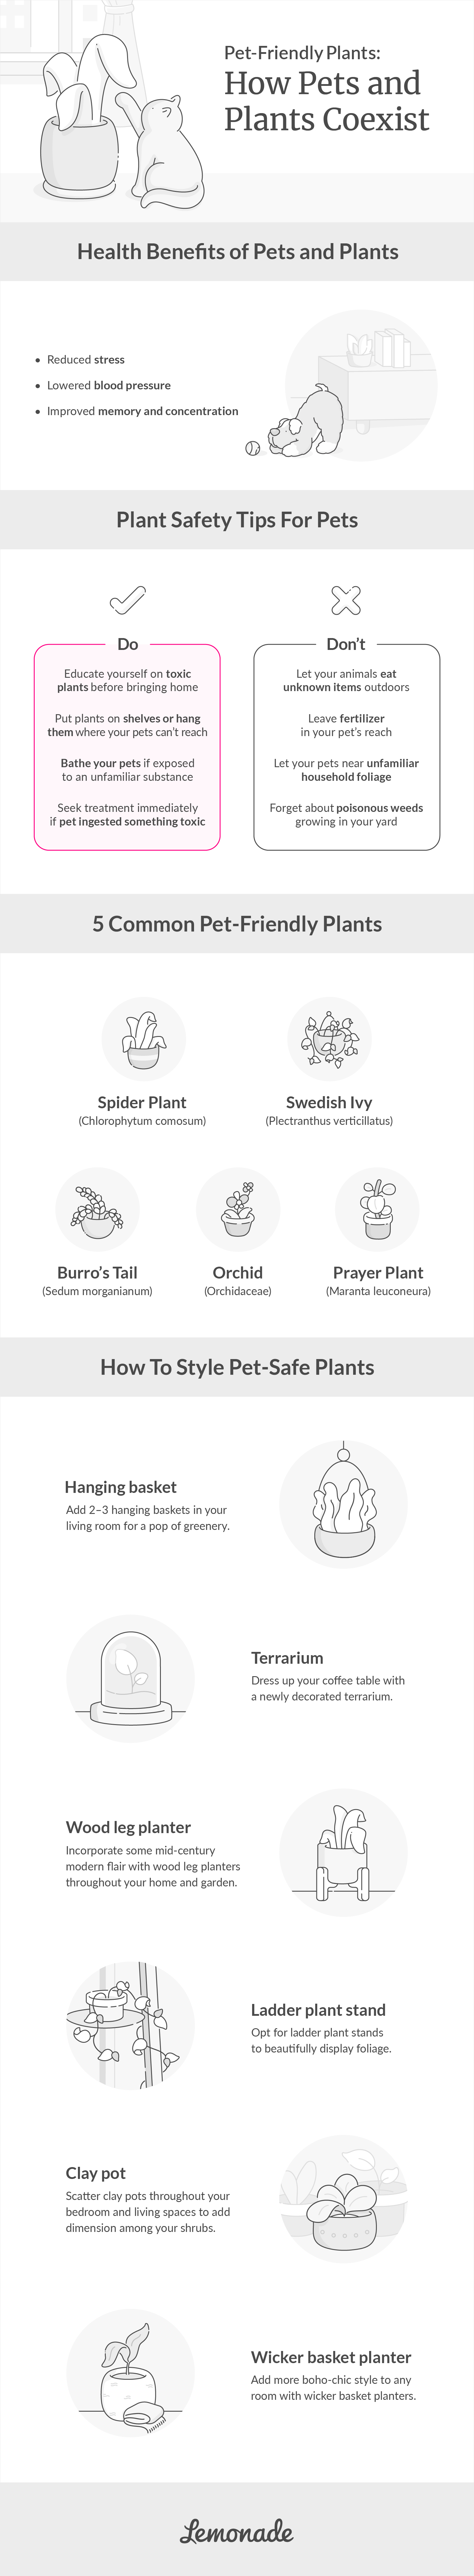 pet-friendly plants: how pets and plants coexist